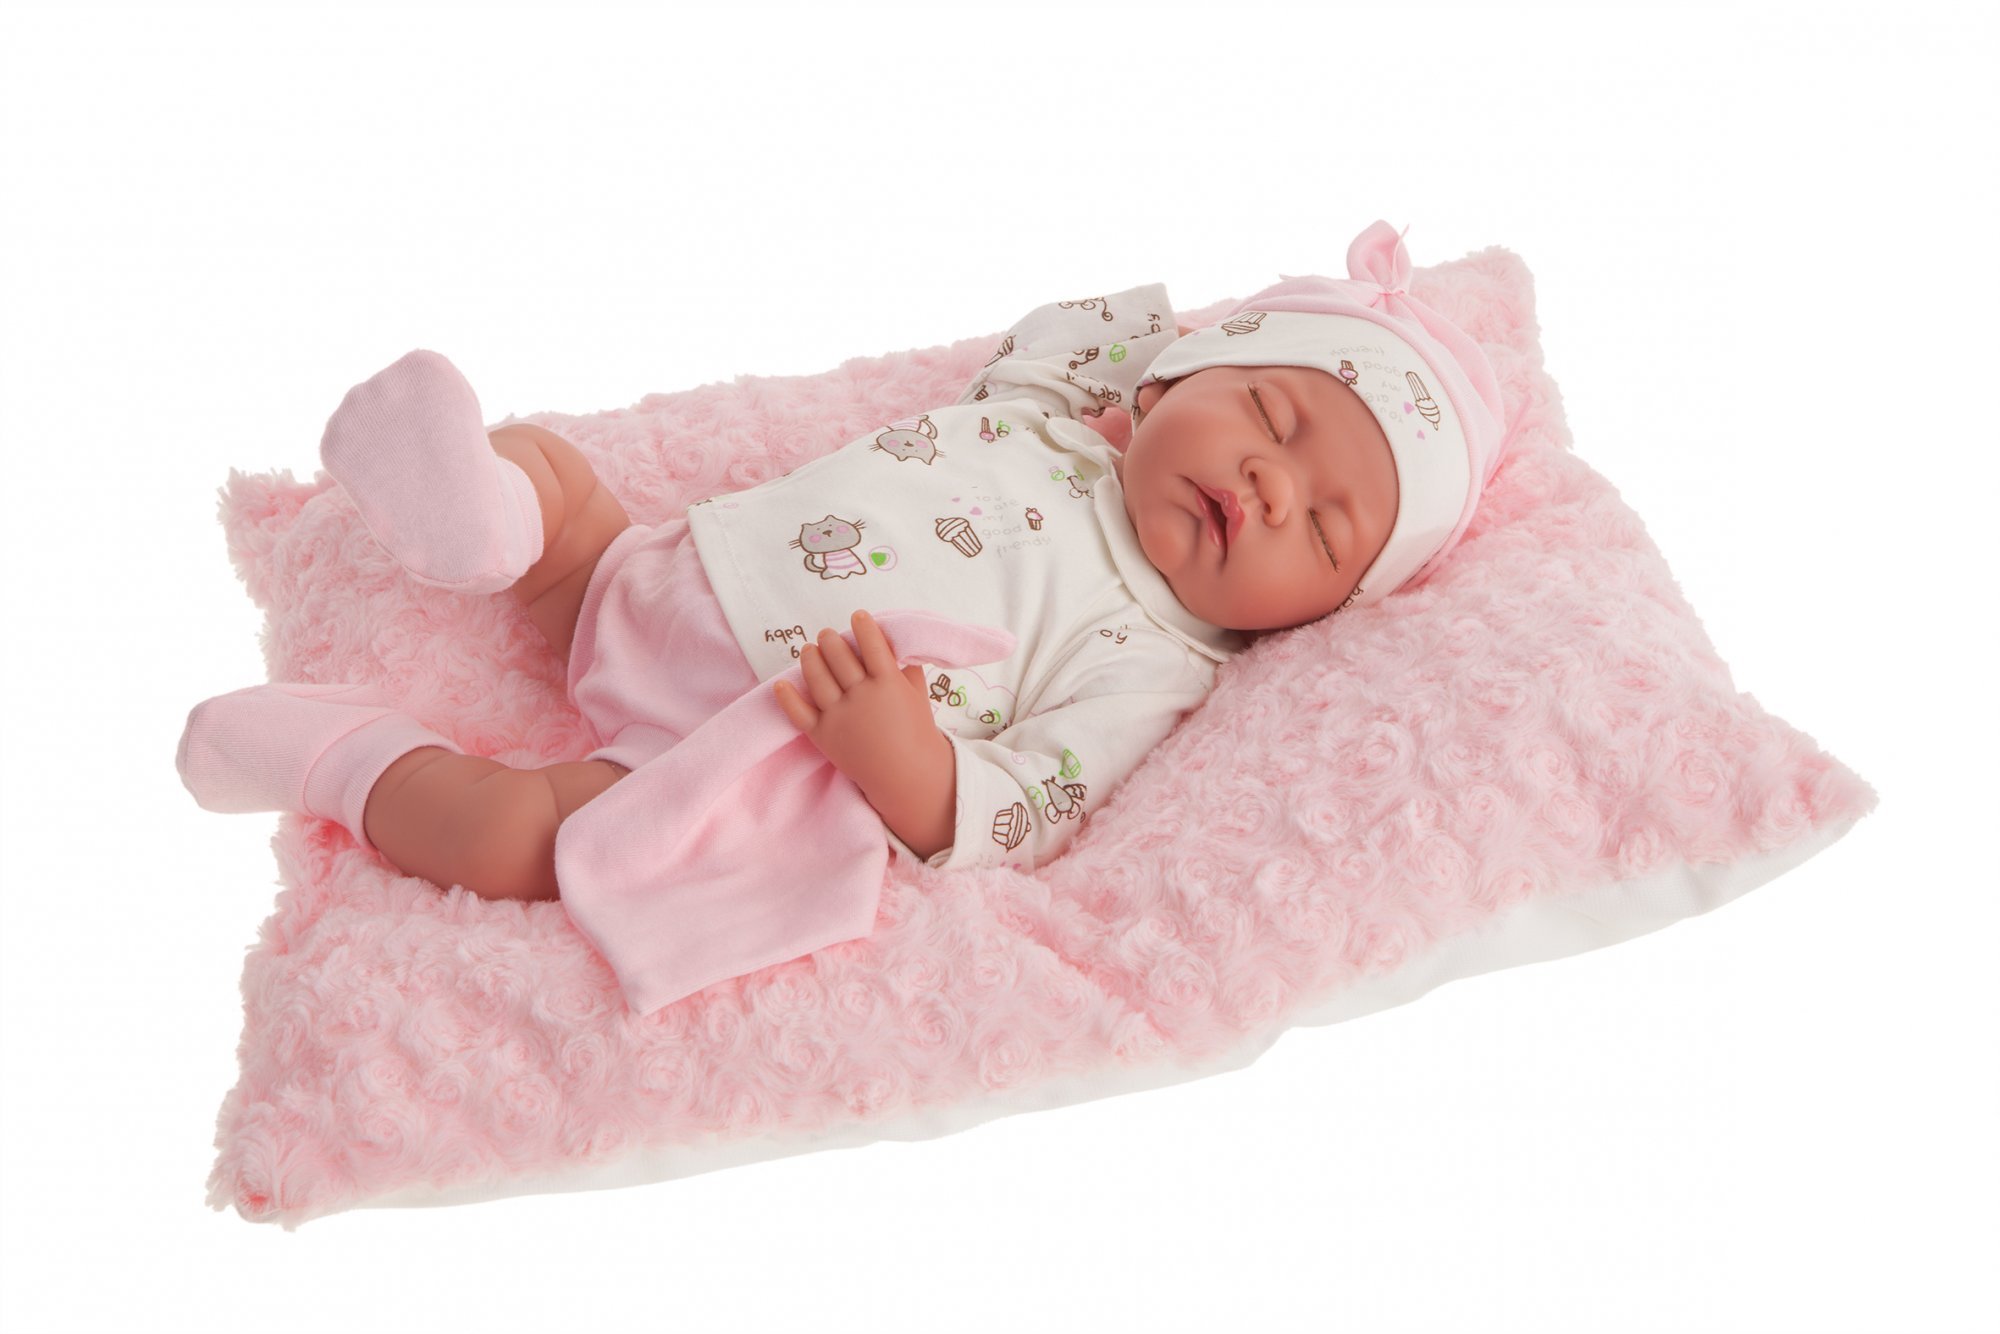 Levně Antonio Juan 3348 LUNA - spící realistická panenka miminko s měkkým látkovým tělem - 42 cm